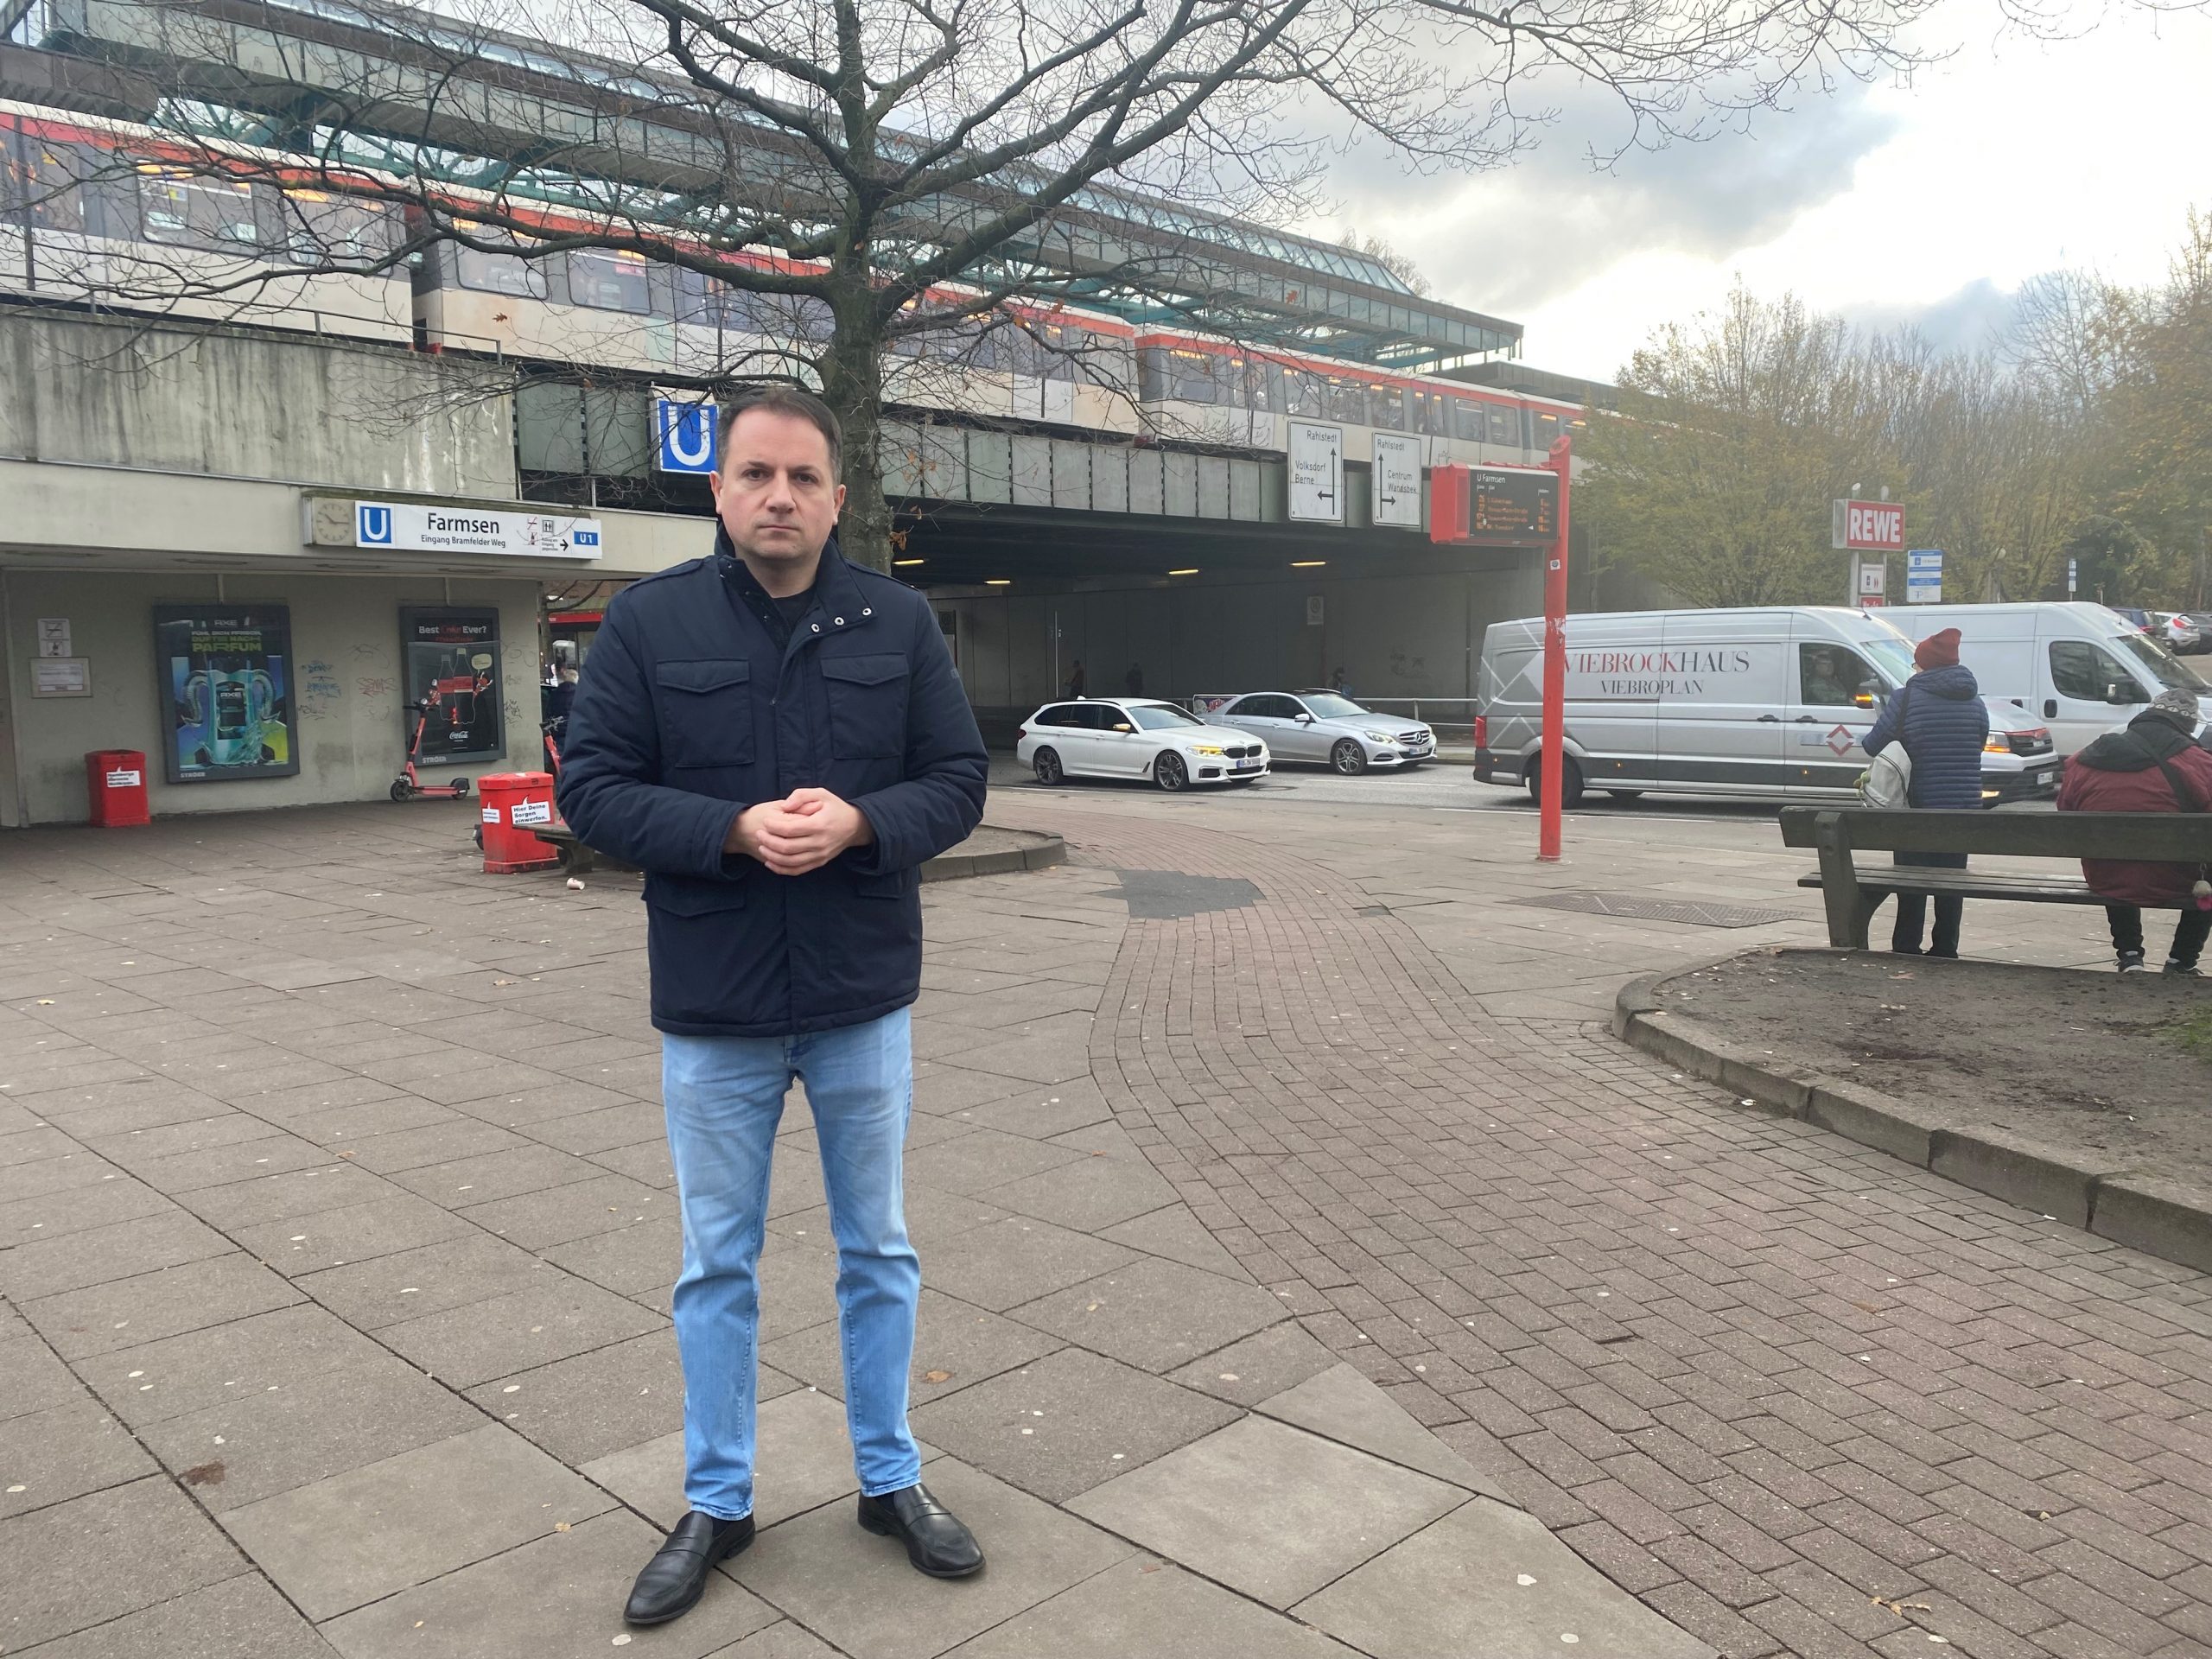 U-Bahnhof Farmsen: Bürger in Sorge wegen wachsender Kriminalität / FDP fordert Offenlegung der Zahlen und Präventionsmaßnahmen